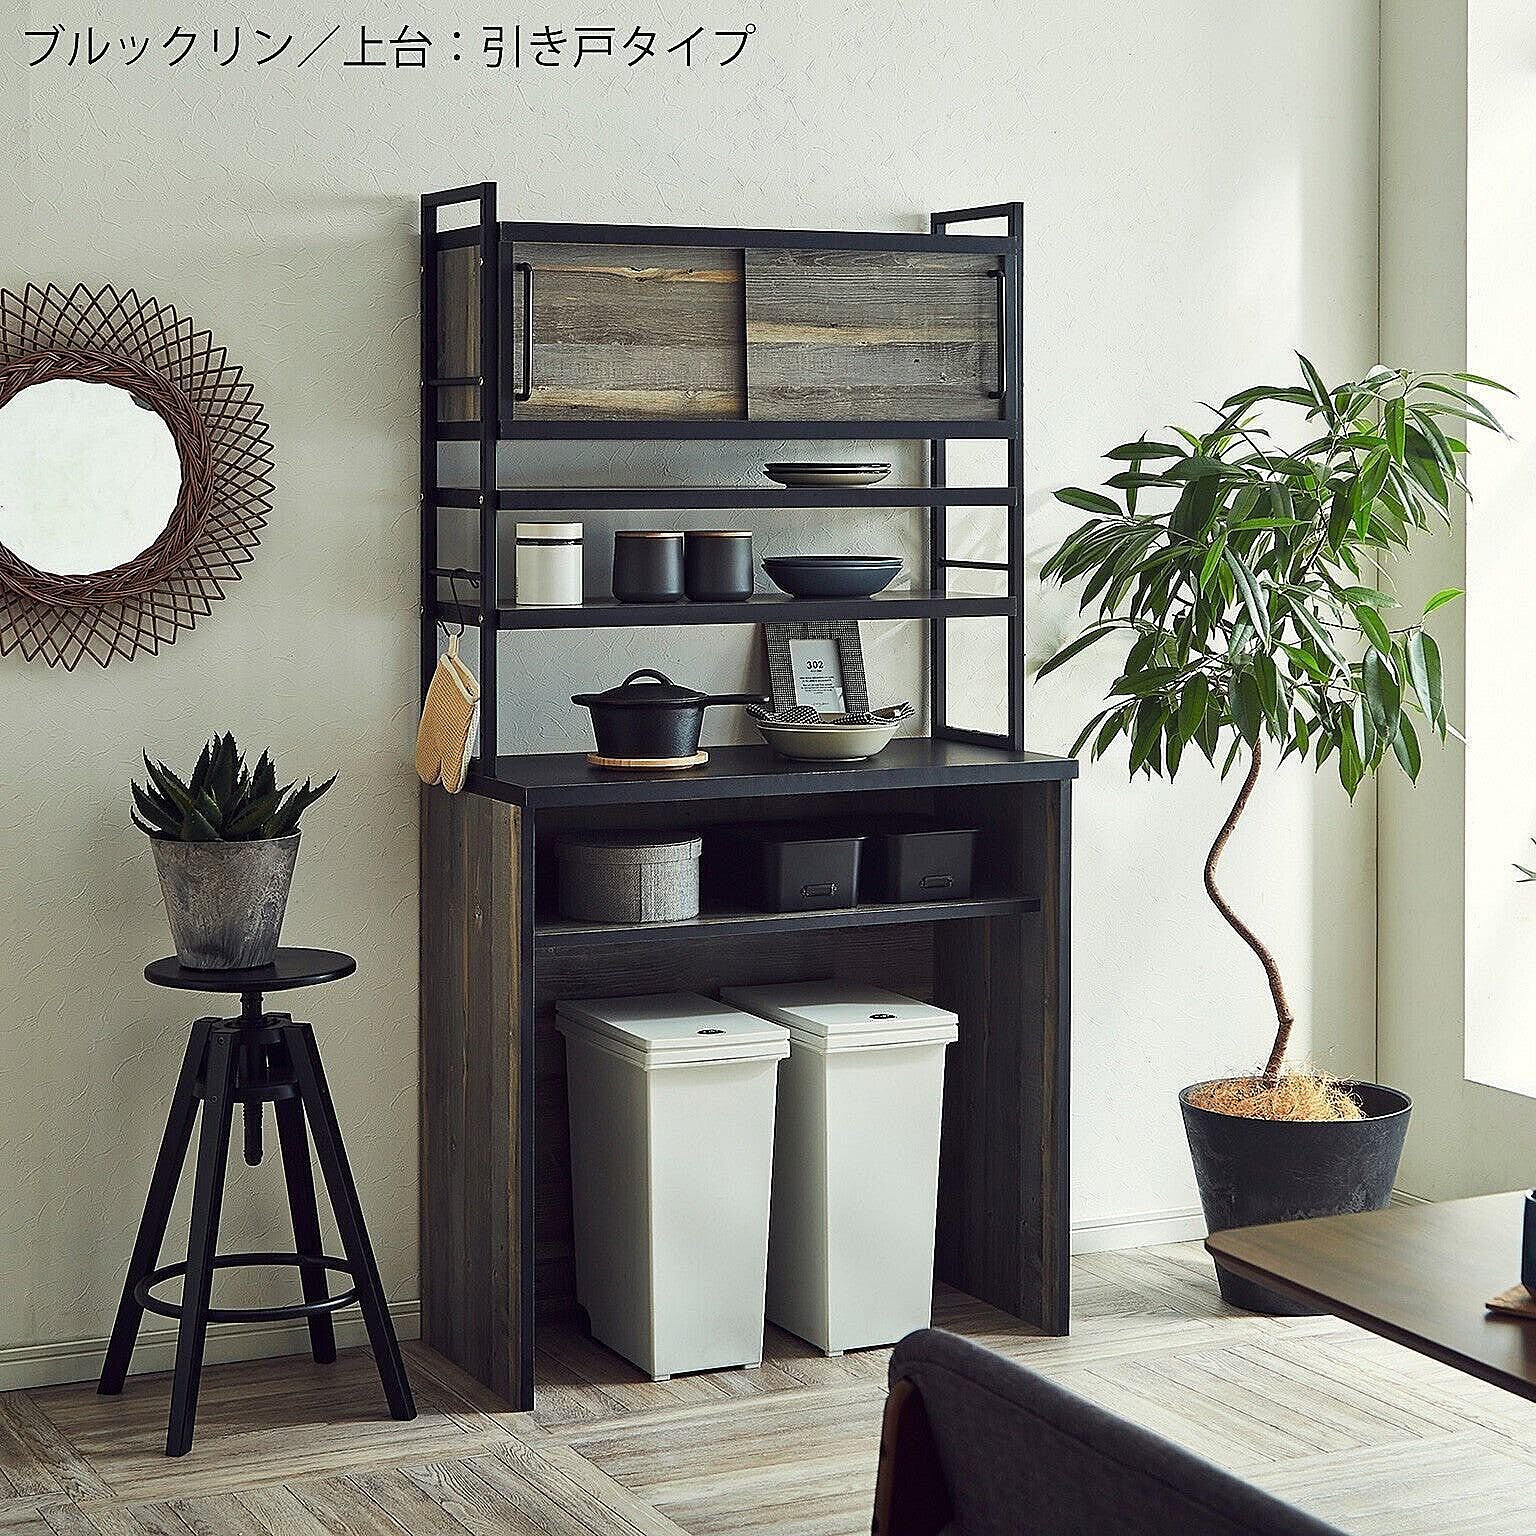 アイン ブルックリン 上台 引き戸タイプ キッチン収納 幅89.7cm 完成品 日本製